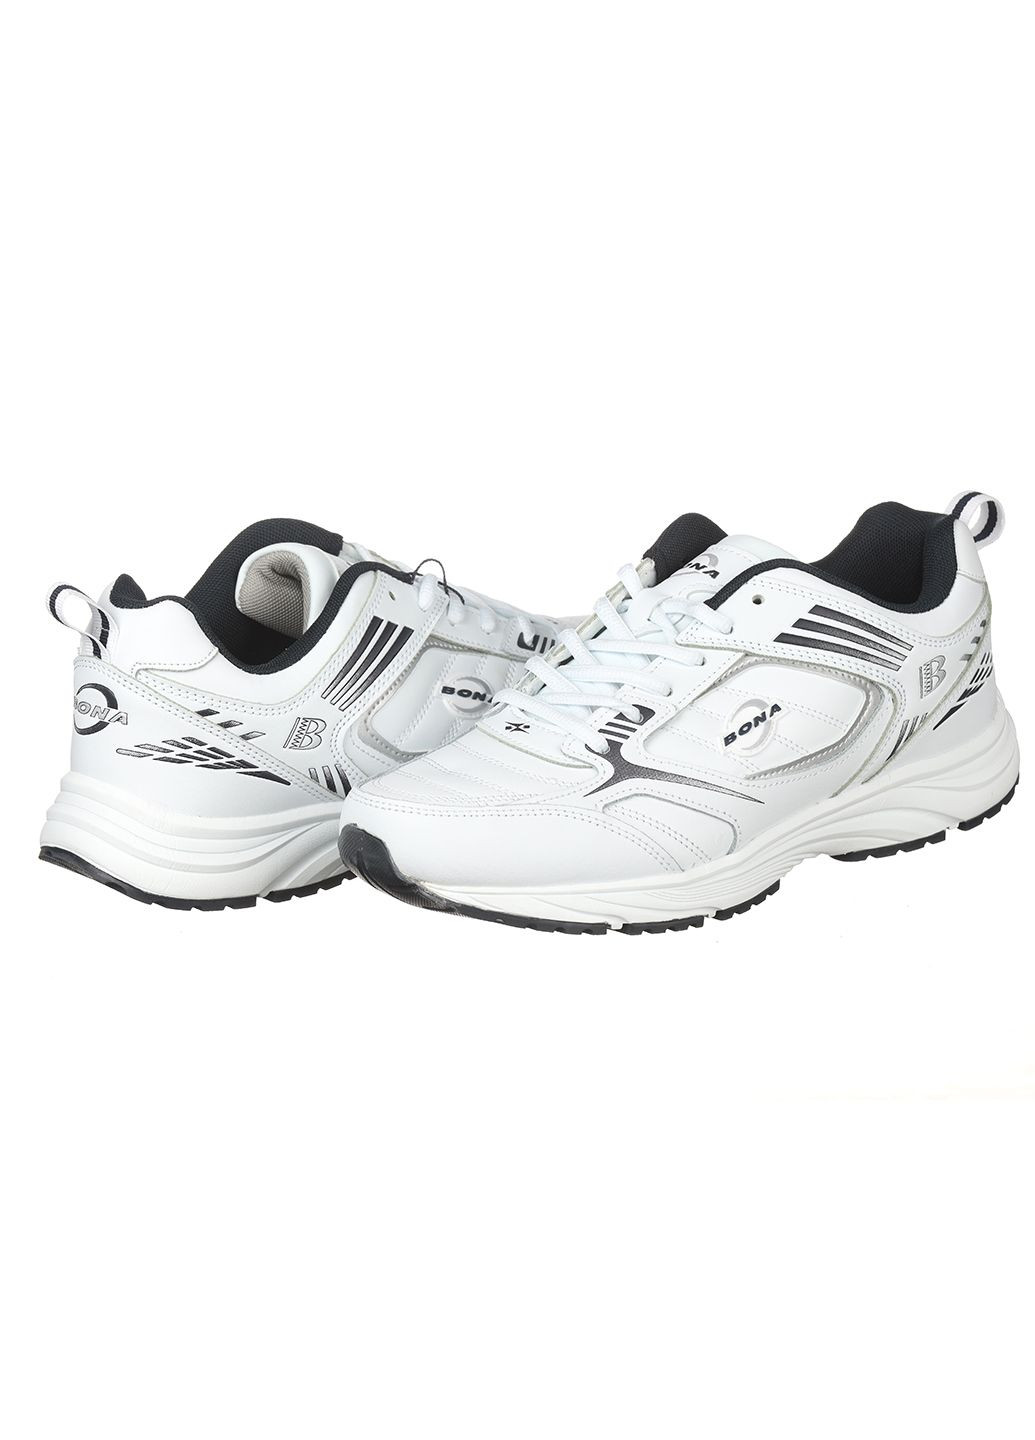 Белые демисезонные мужские кроссовки из кожи 658a Bona